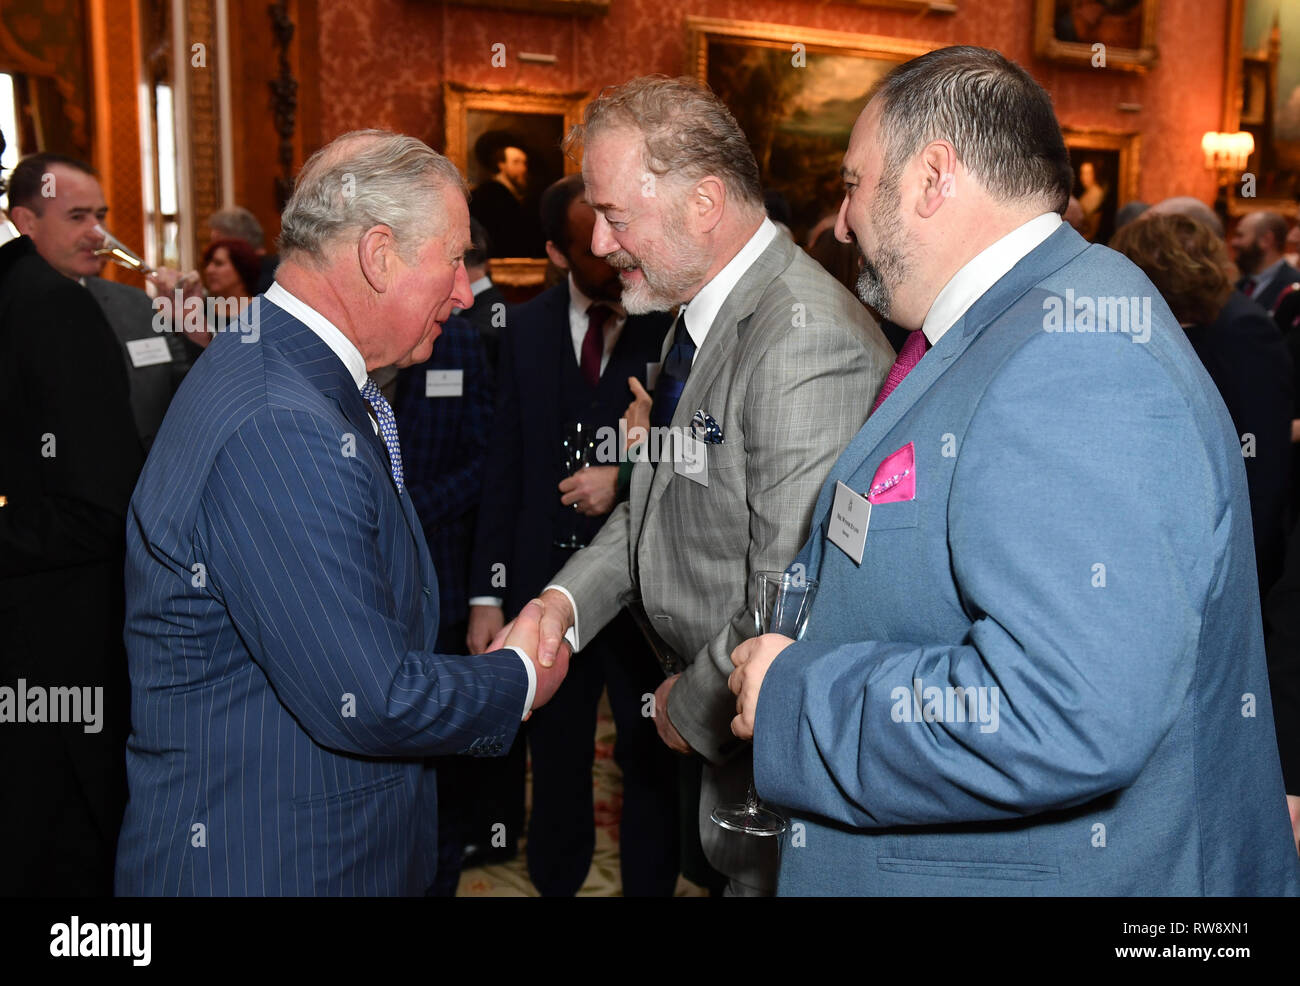 Le Prince de Galles parle avec l'acteur Owen Teale et singer Wynne Evans (à droite) lors d'une réception au palais de Buckingham à Londres pour marquer le cinquantième anniversaire de l'investiture du Prince de Galles. Banque D'Images